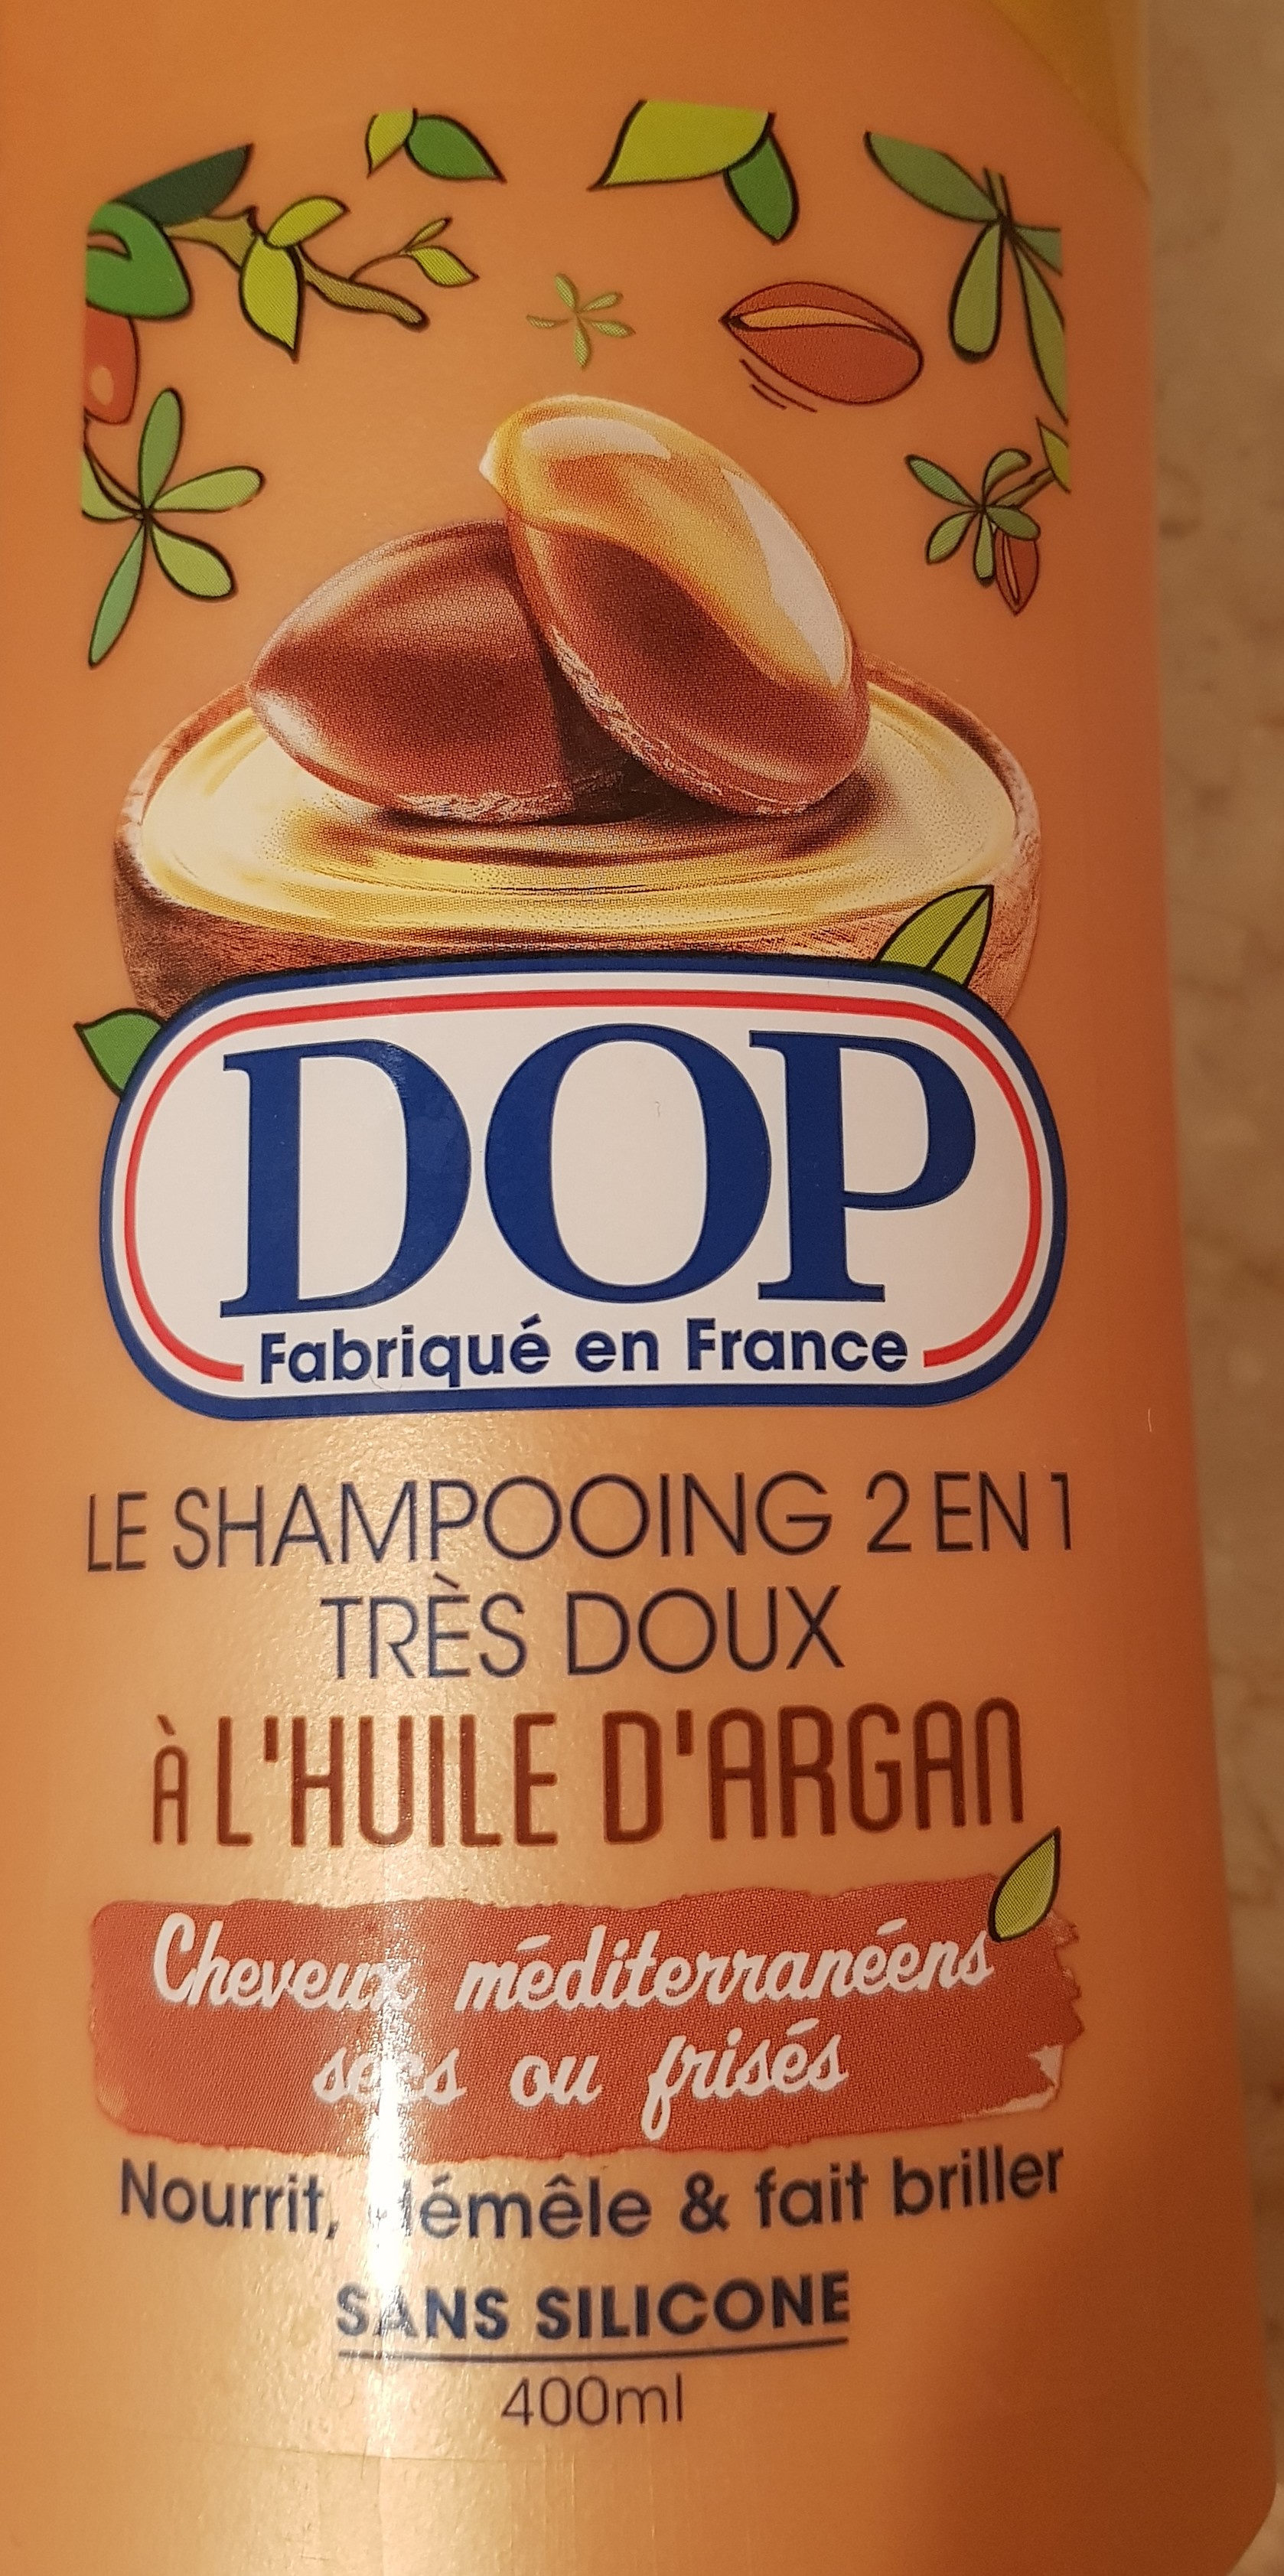 Shampooing 2 en 1 très doux à l'huile d'argan - Product - fr